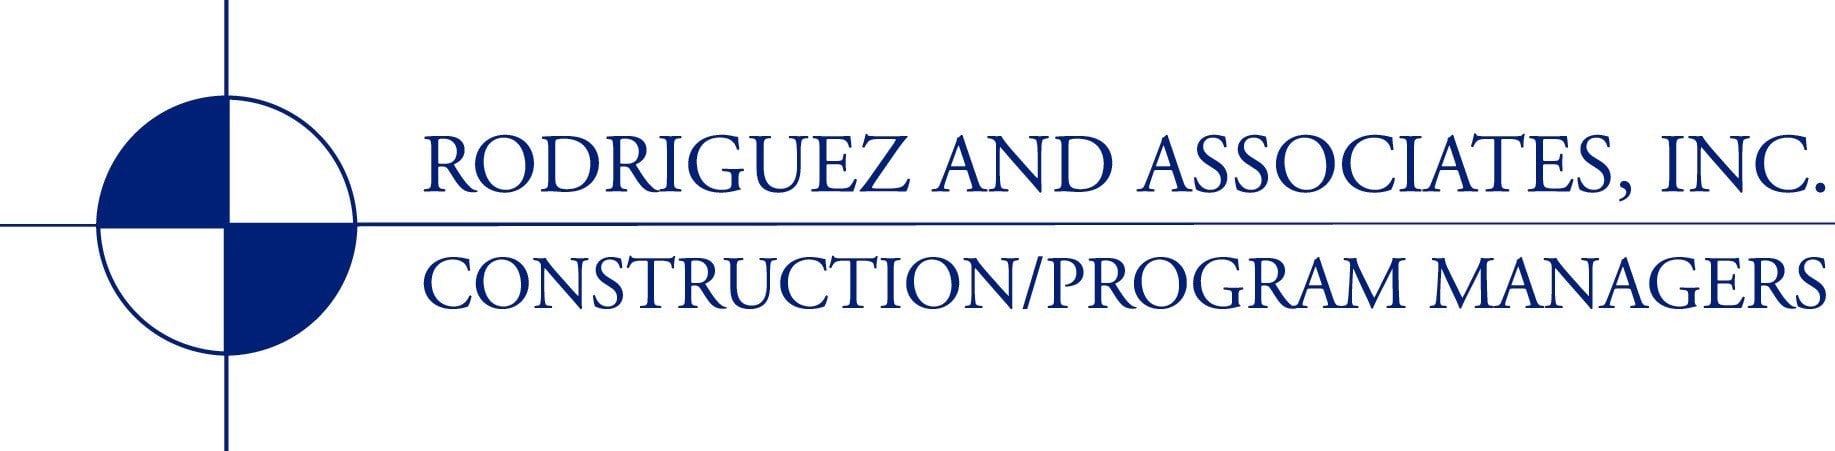 Rodriguez and Associates, Inc